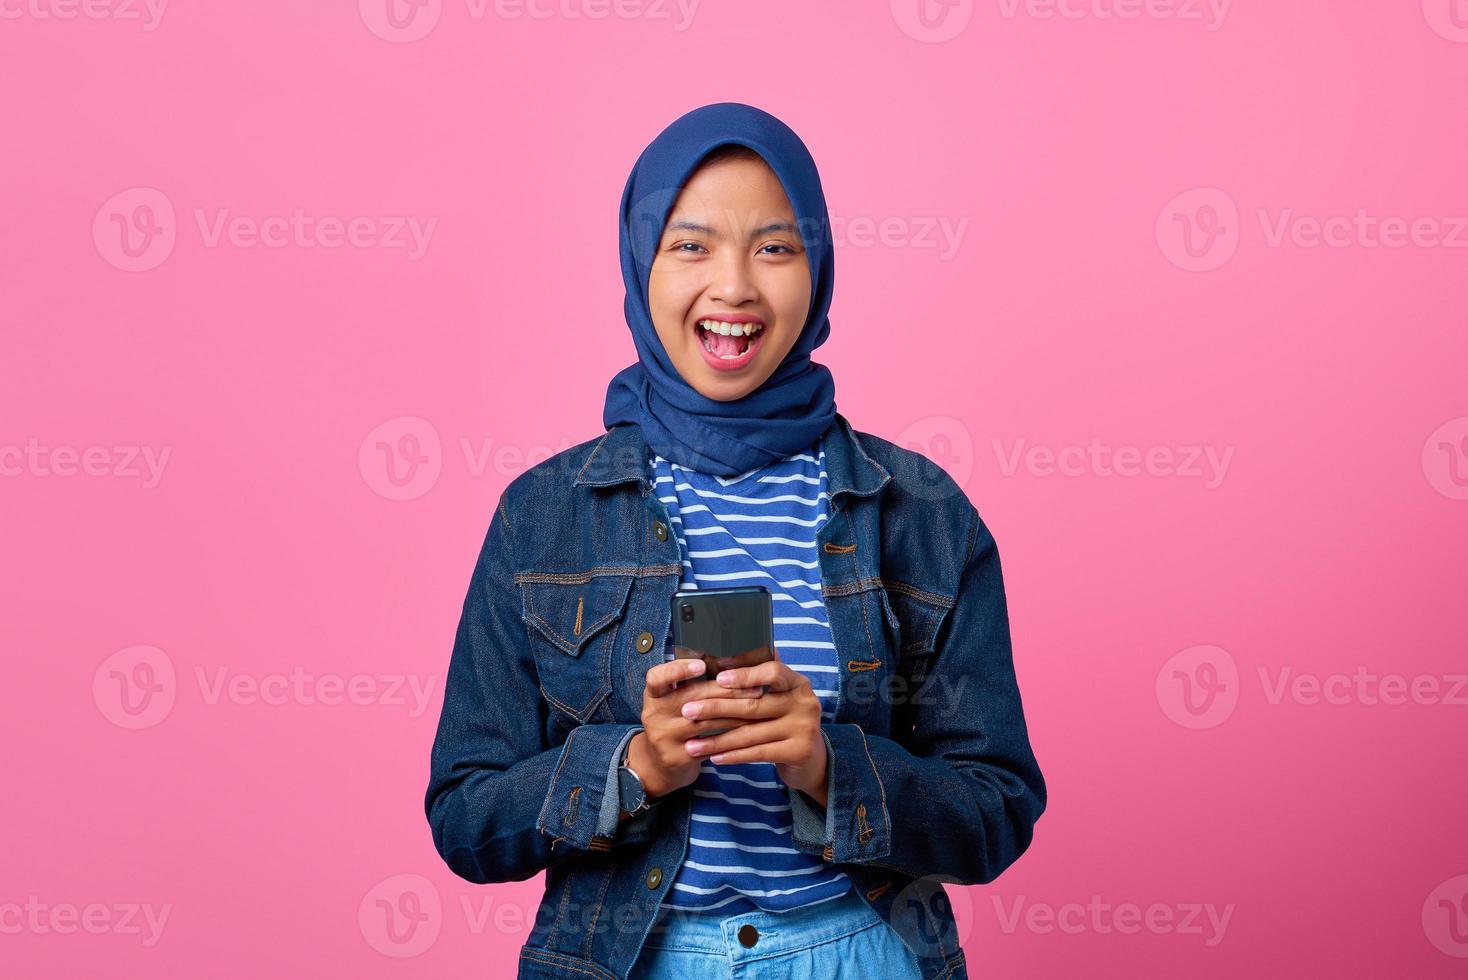 retrato de uma jovem asiática alegre segurando um smartphone enquanto olha para a câmera foto